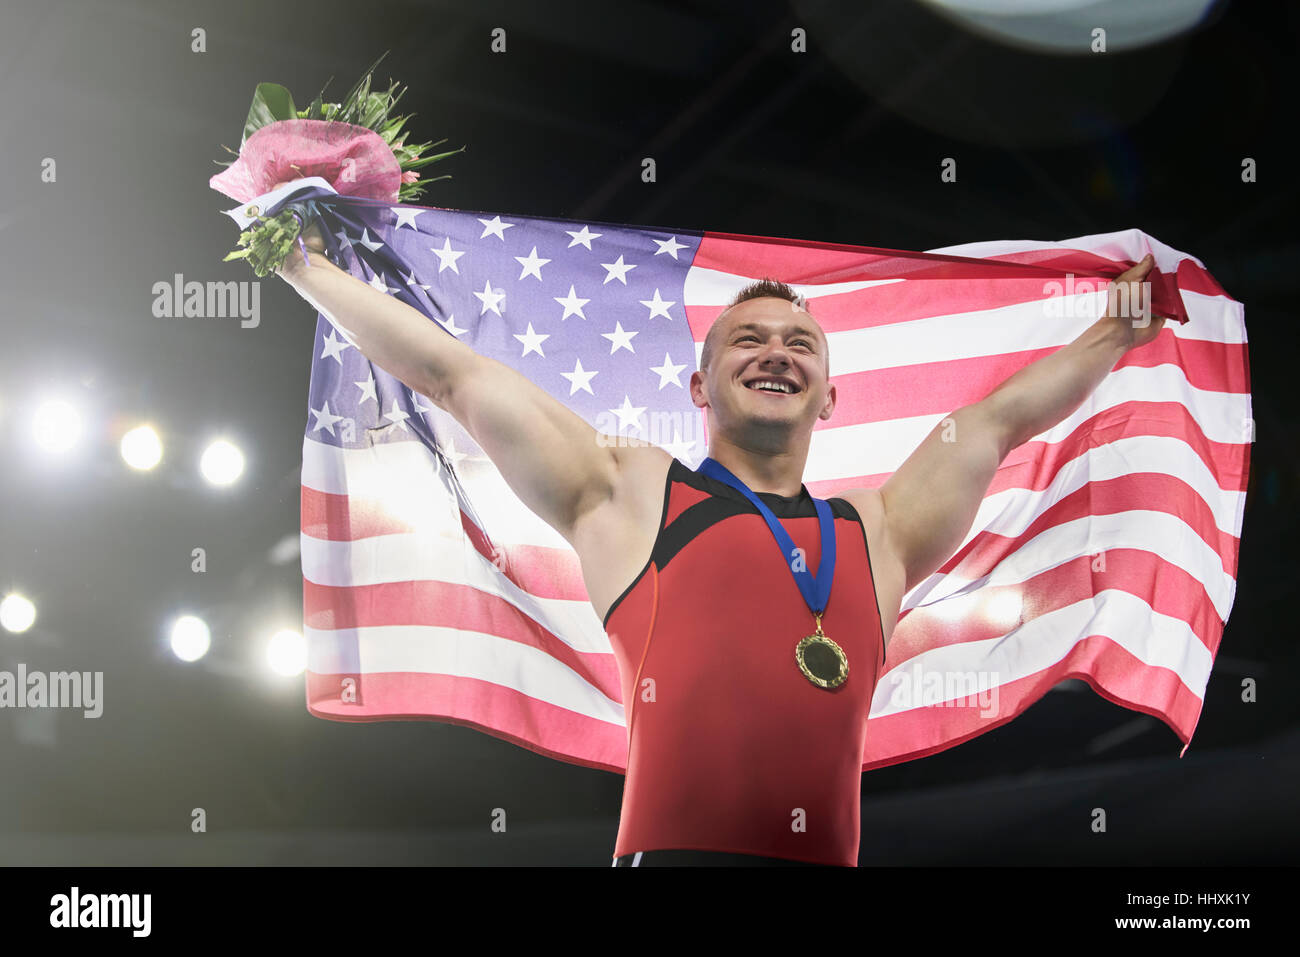 Begeisterten männlichen Turner feiert Sieg mit amerikanischen Fahne auf Gewinner-podium Stockfoto